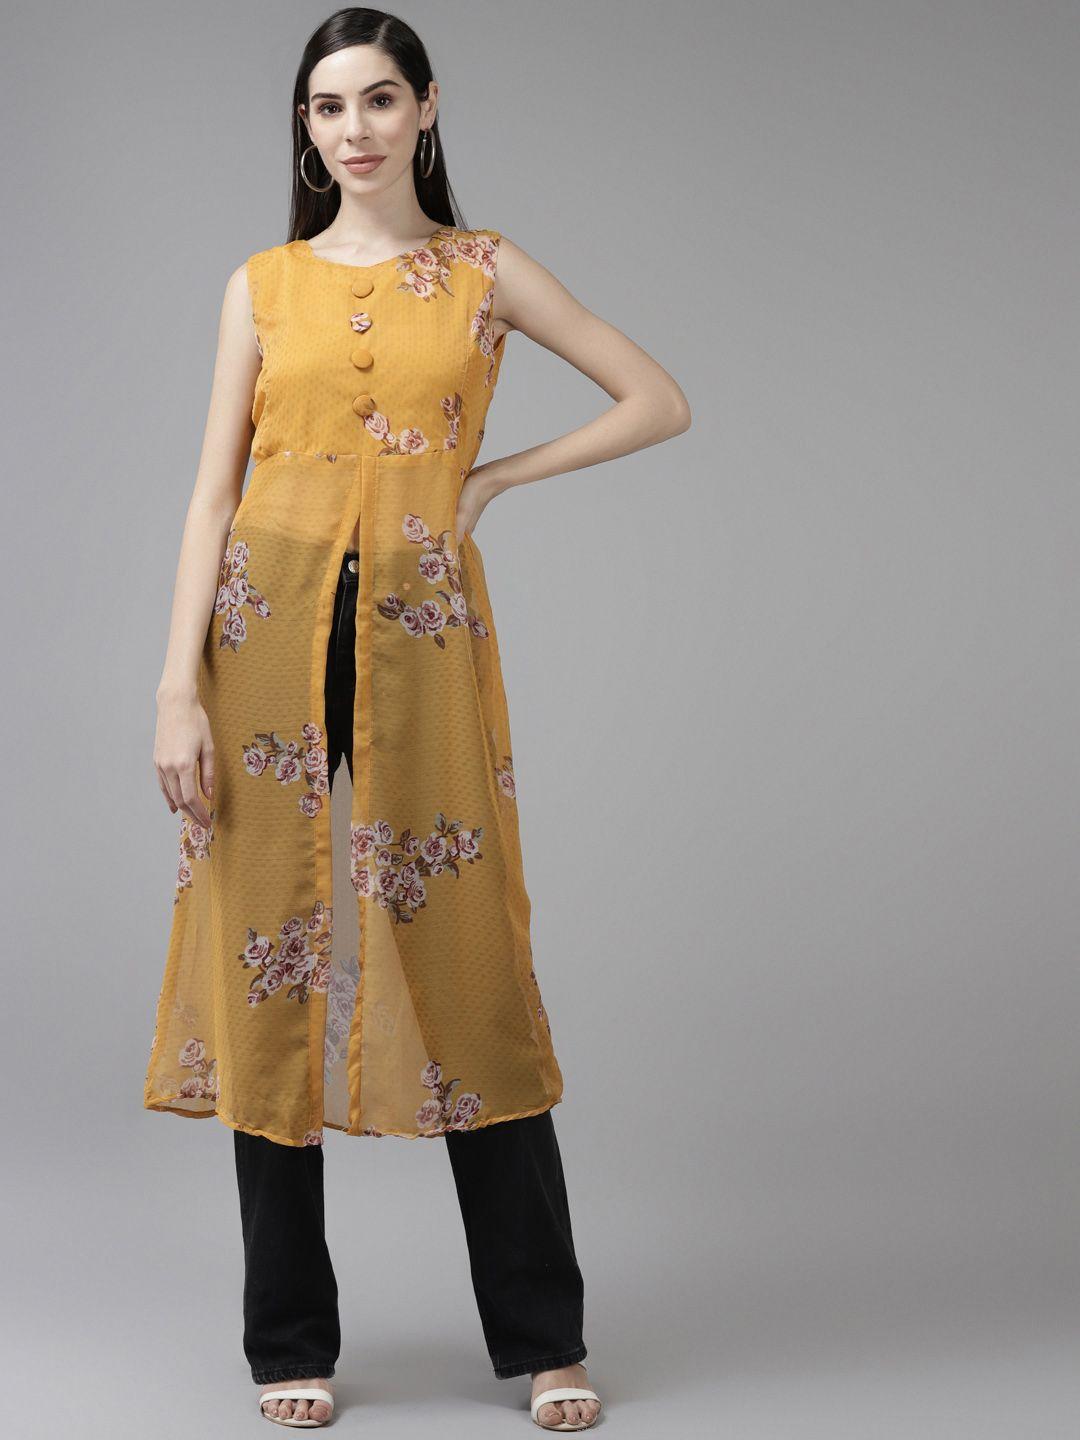 aarika-women-gold-toned-floral-printed-georgette-longline-top